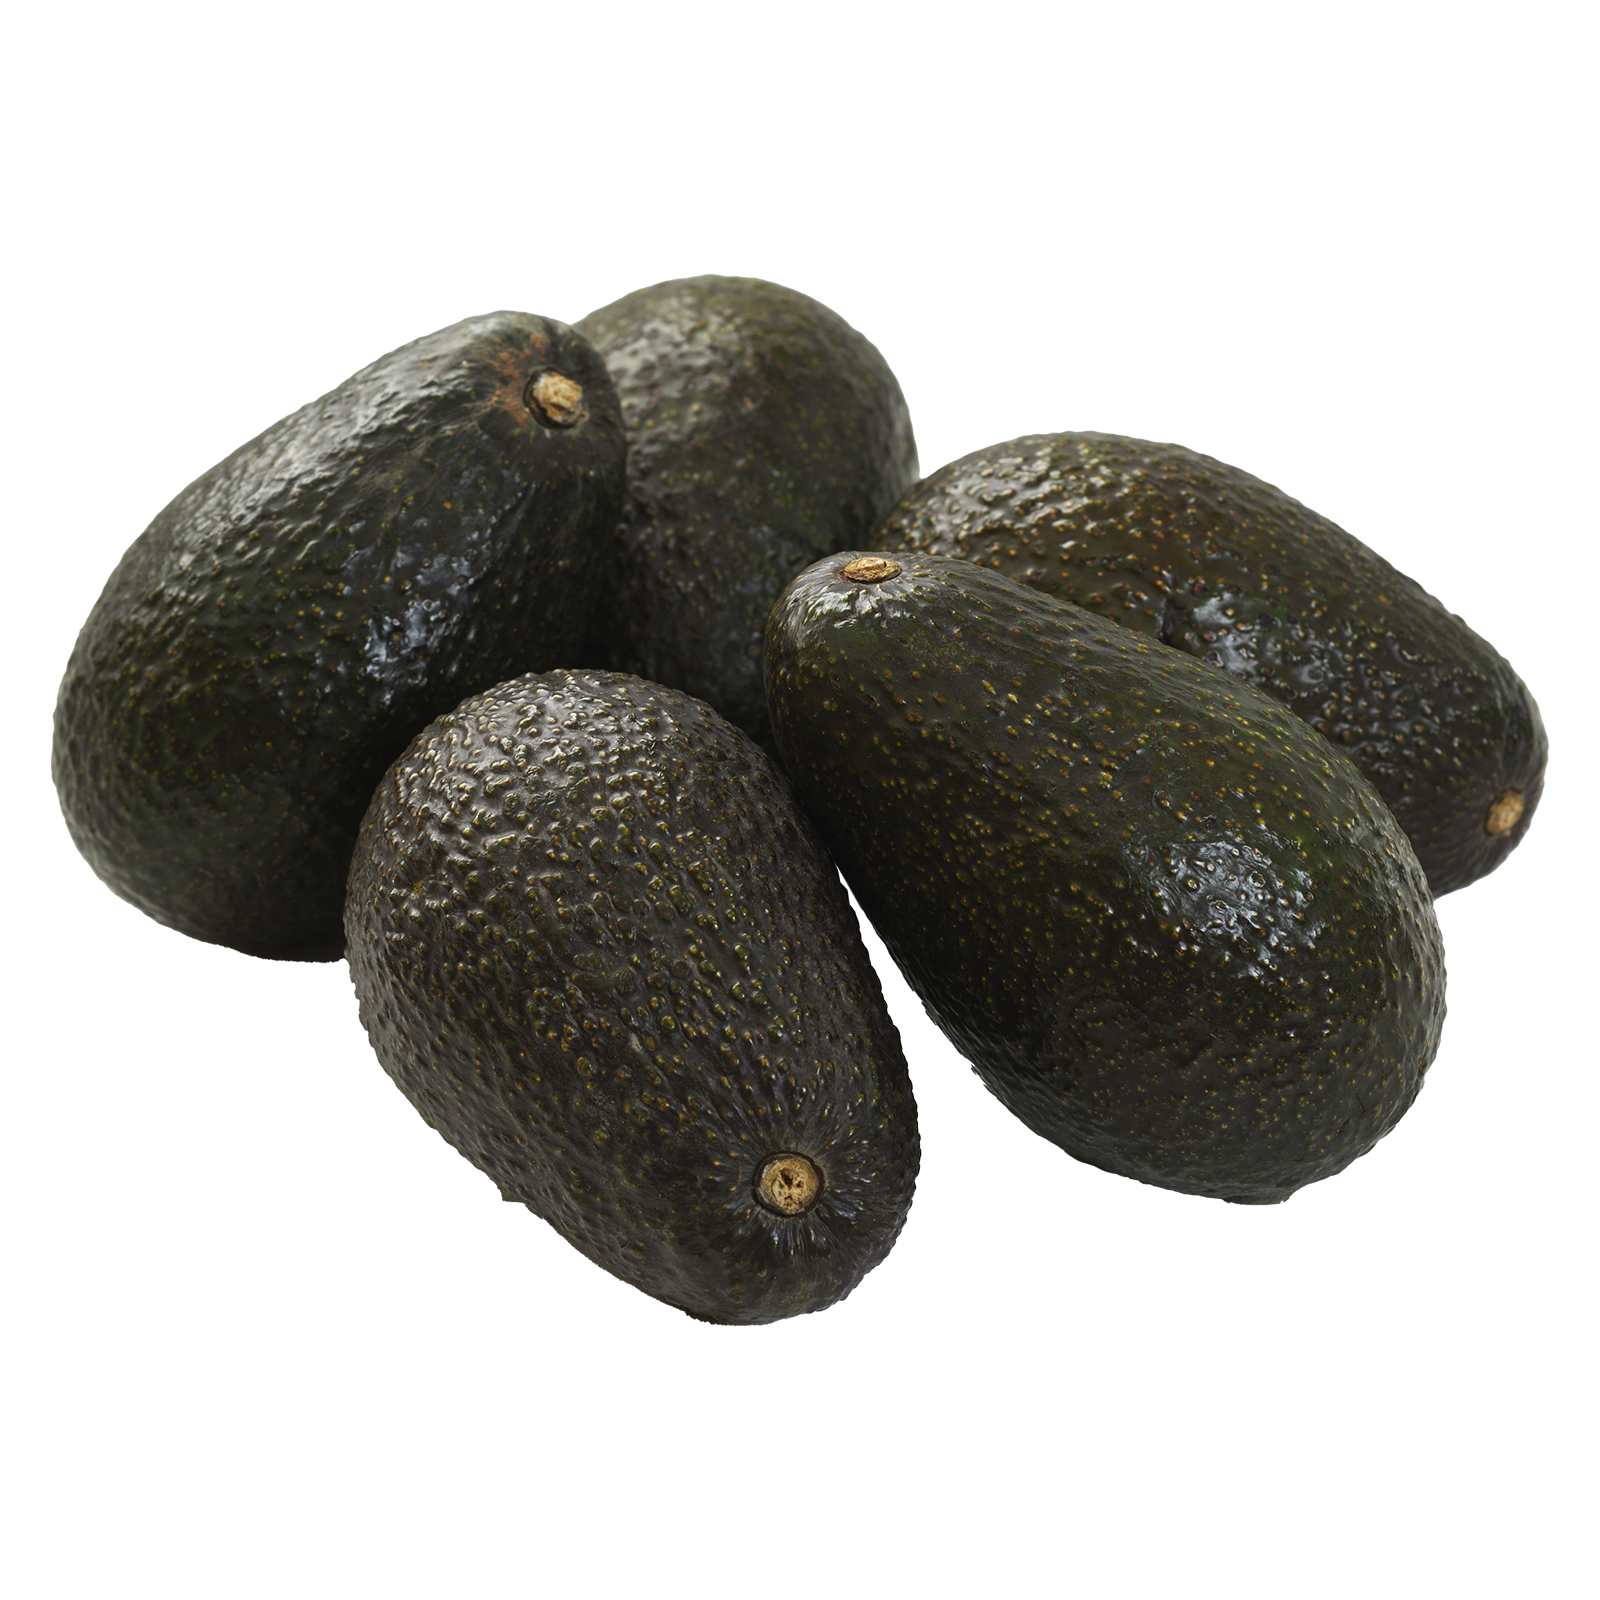 Avocado - 5ct